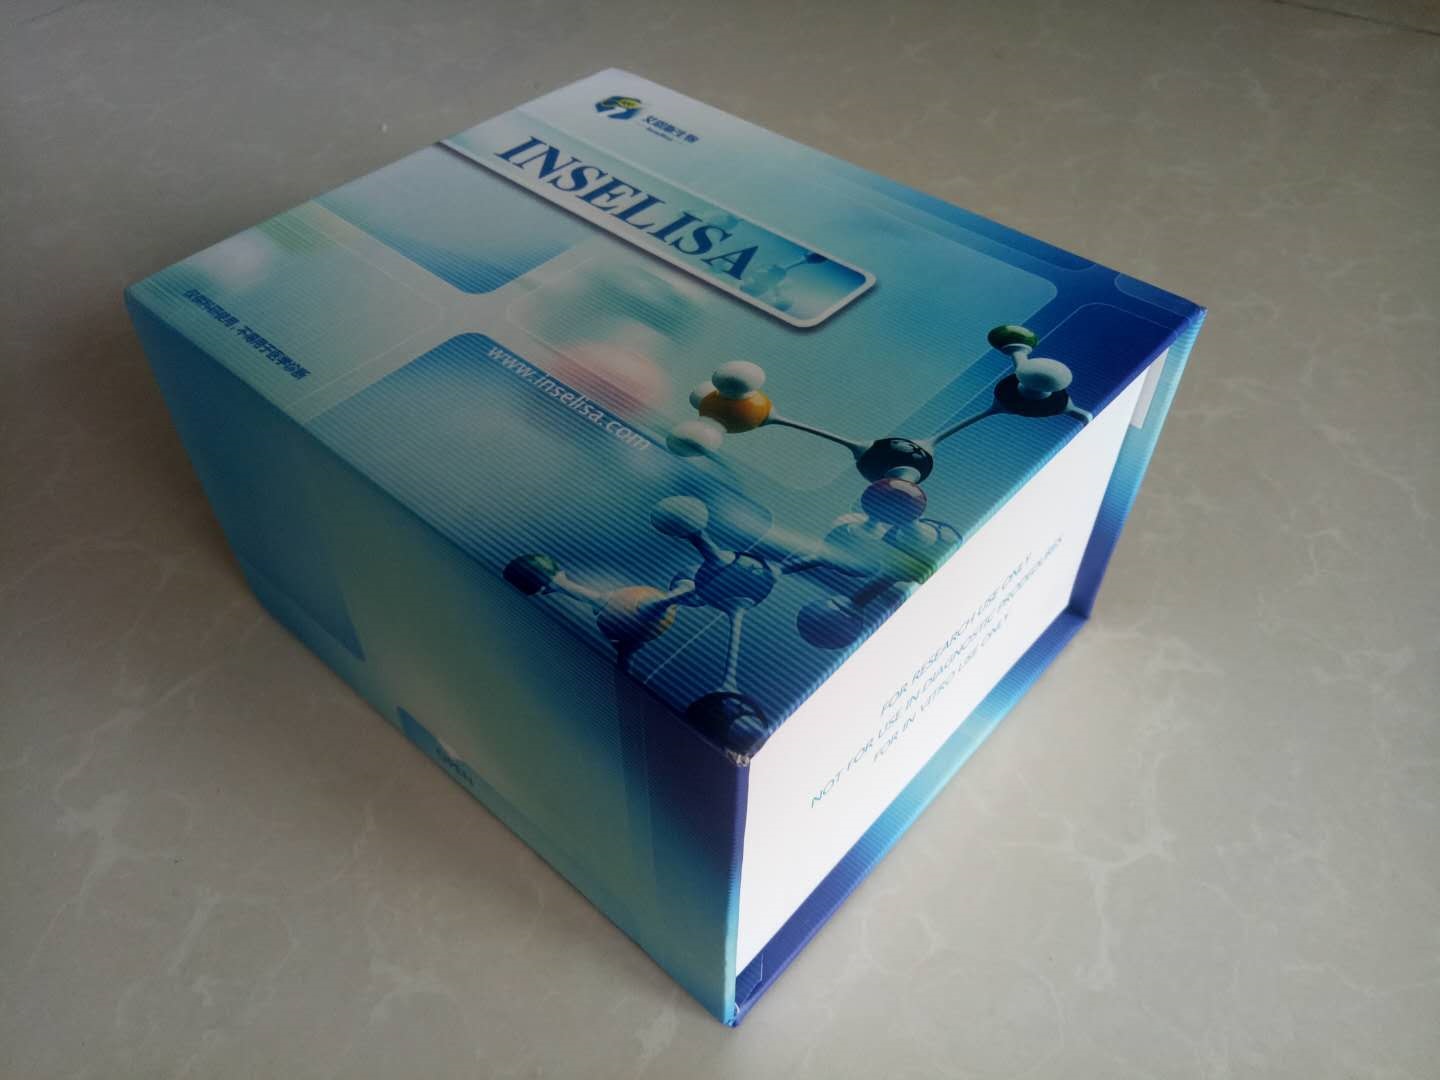 大鼠胰岛素原（Pro-INS）酶联免疫试剂盒（ELISA试剂盒）